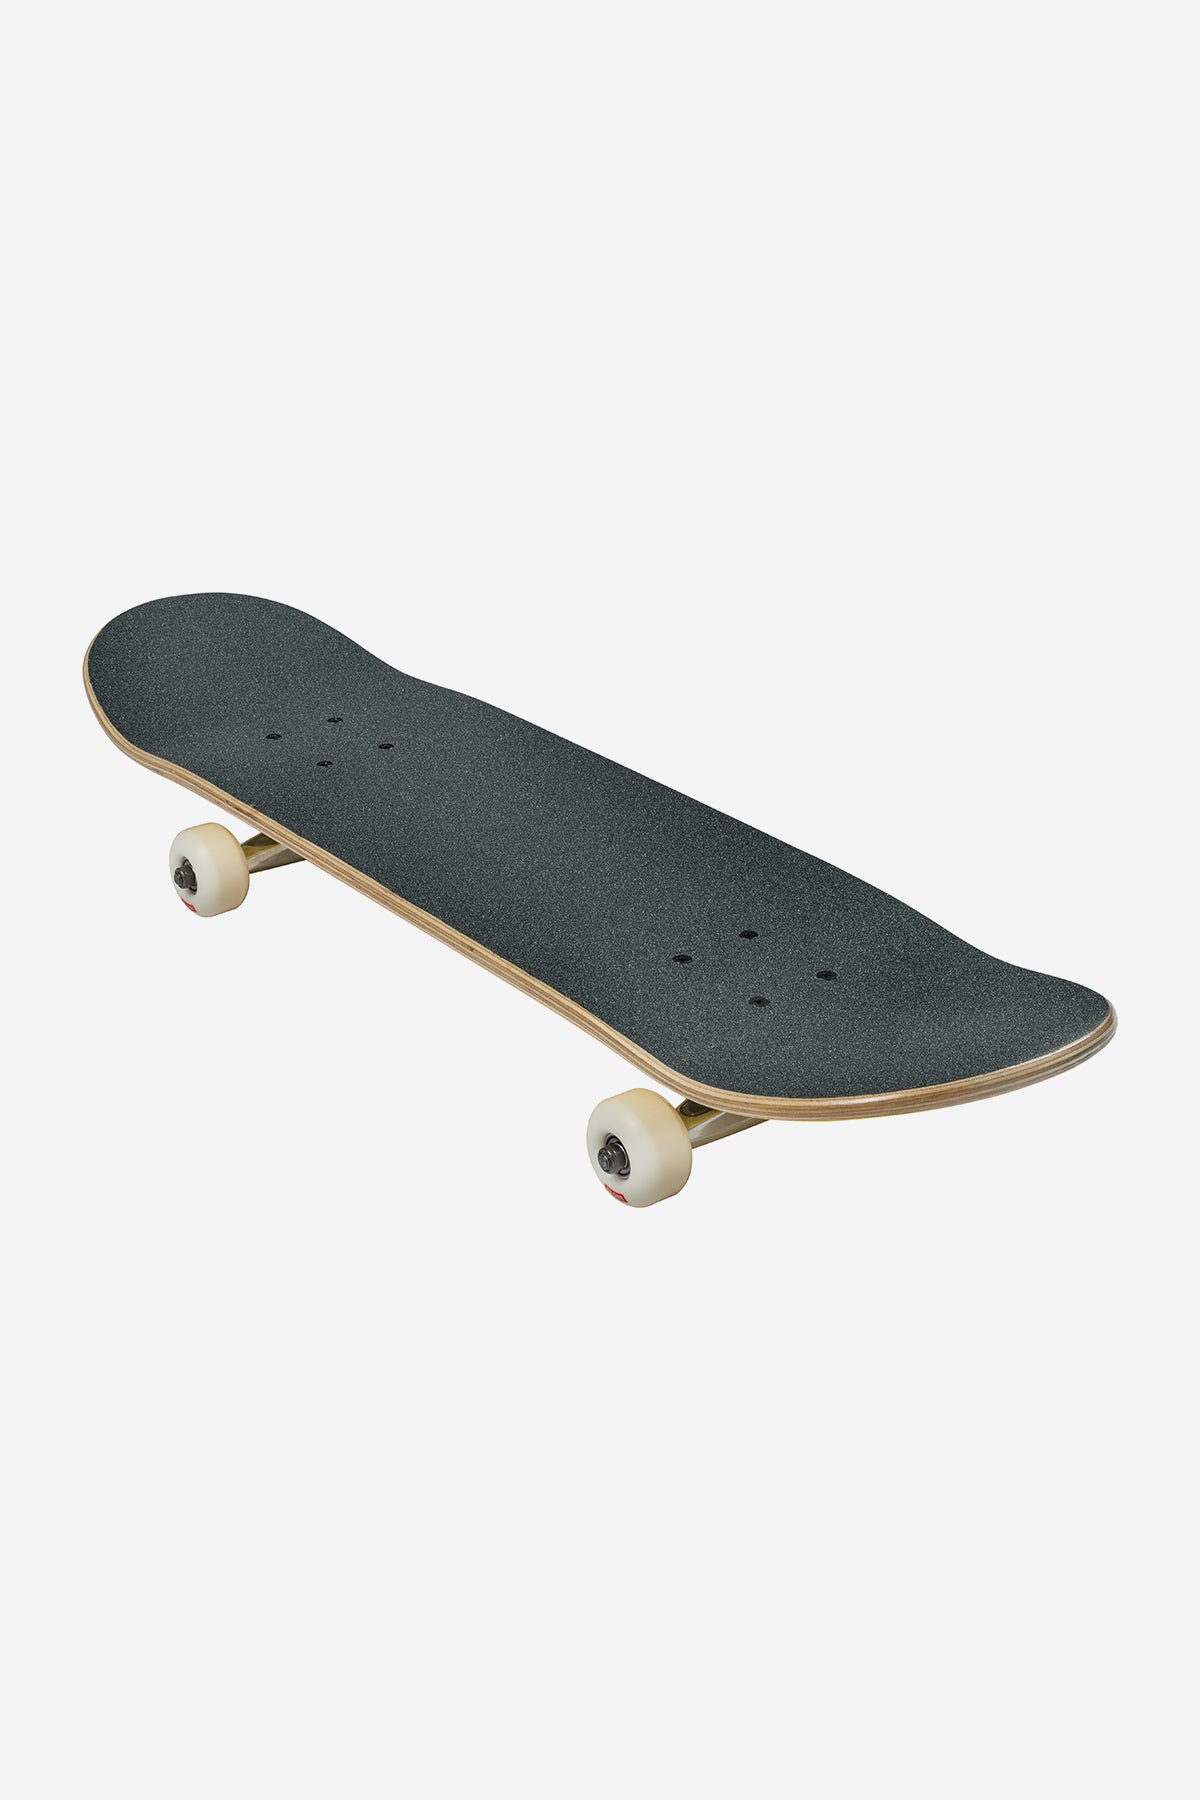 goodstock noir 8.125" complet skateboard